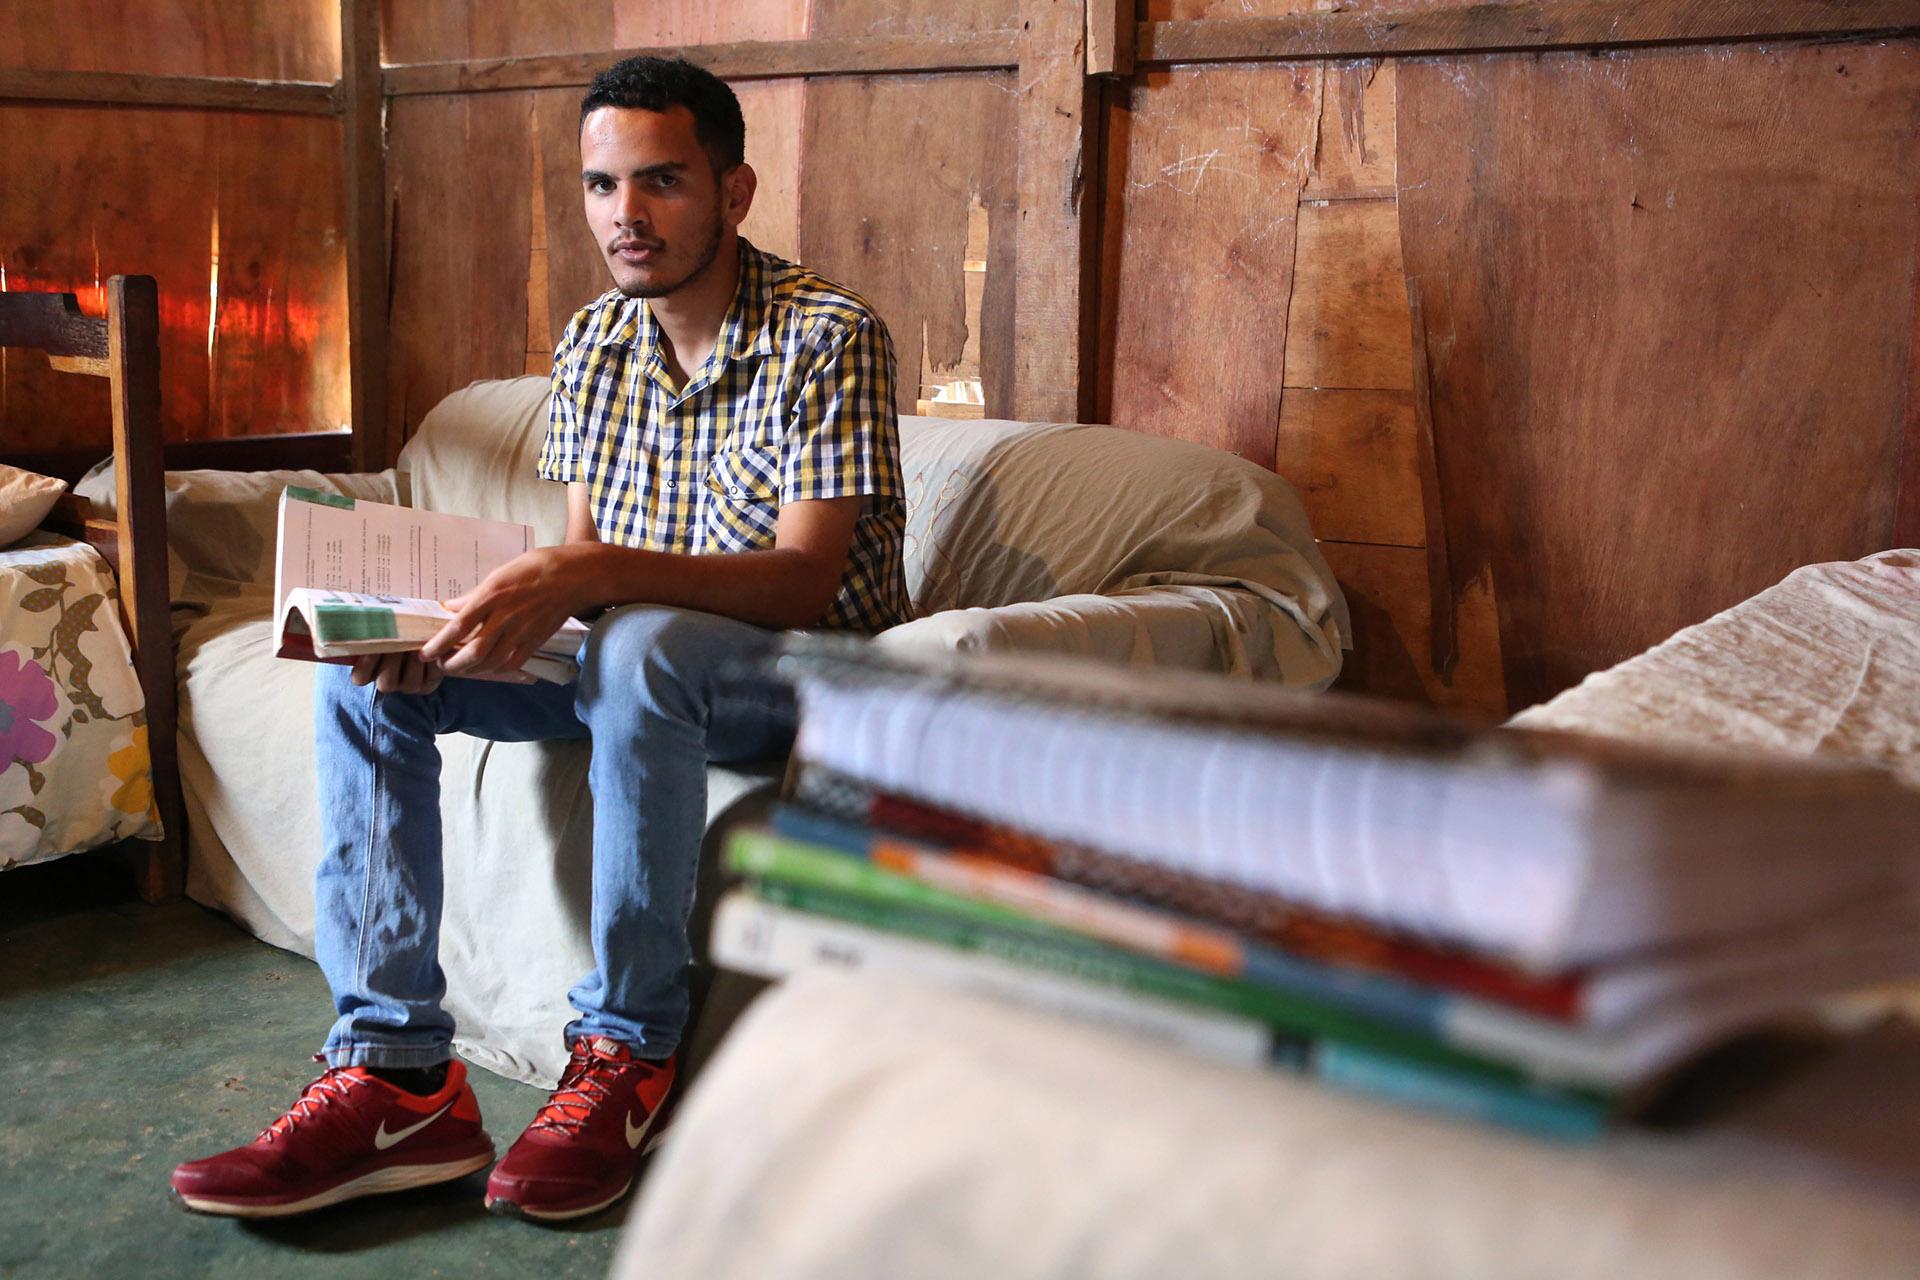 Morador de Santa Maria, Jhonas de Sousa Santos vai cursar direito. Ele é um dos 138 estudantes do projeto que passaram na seleção em primeira chamada